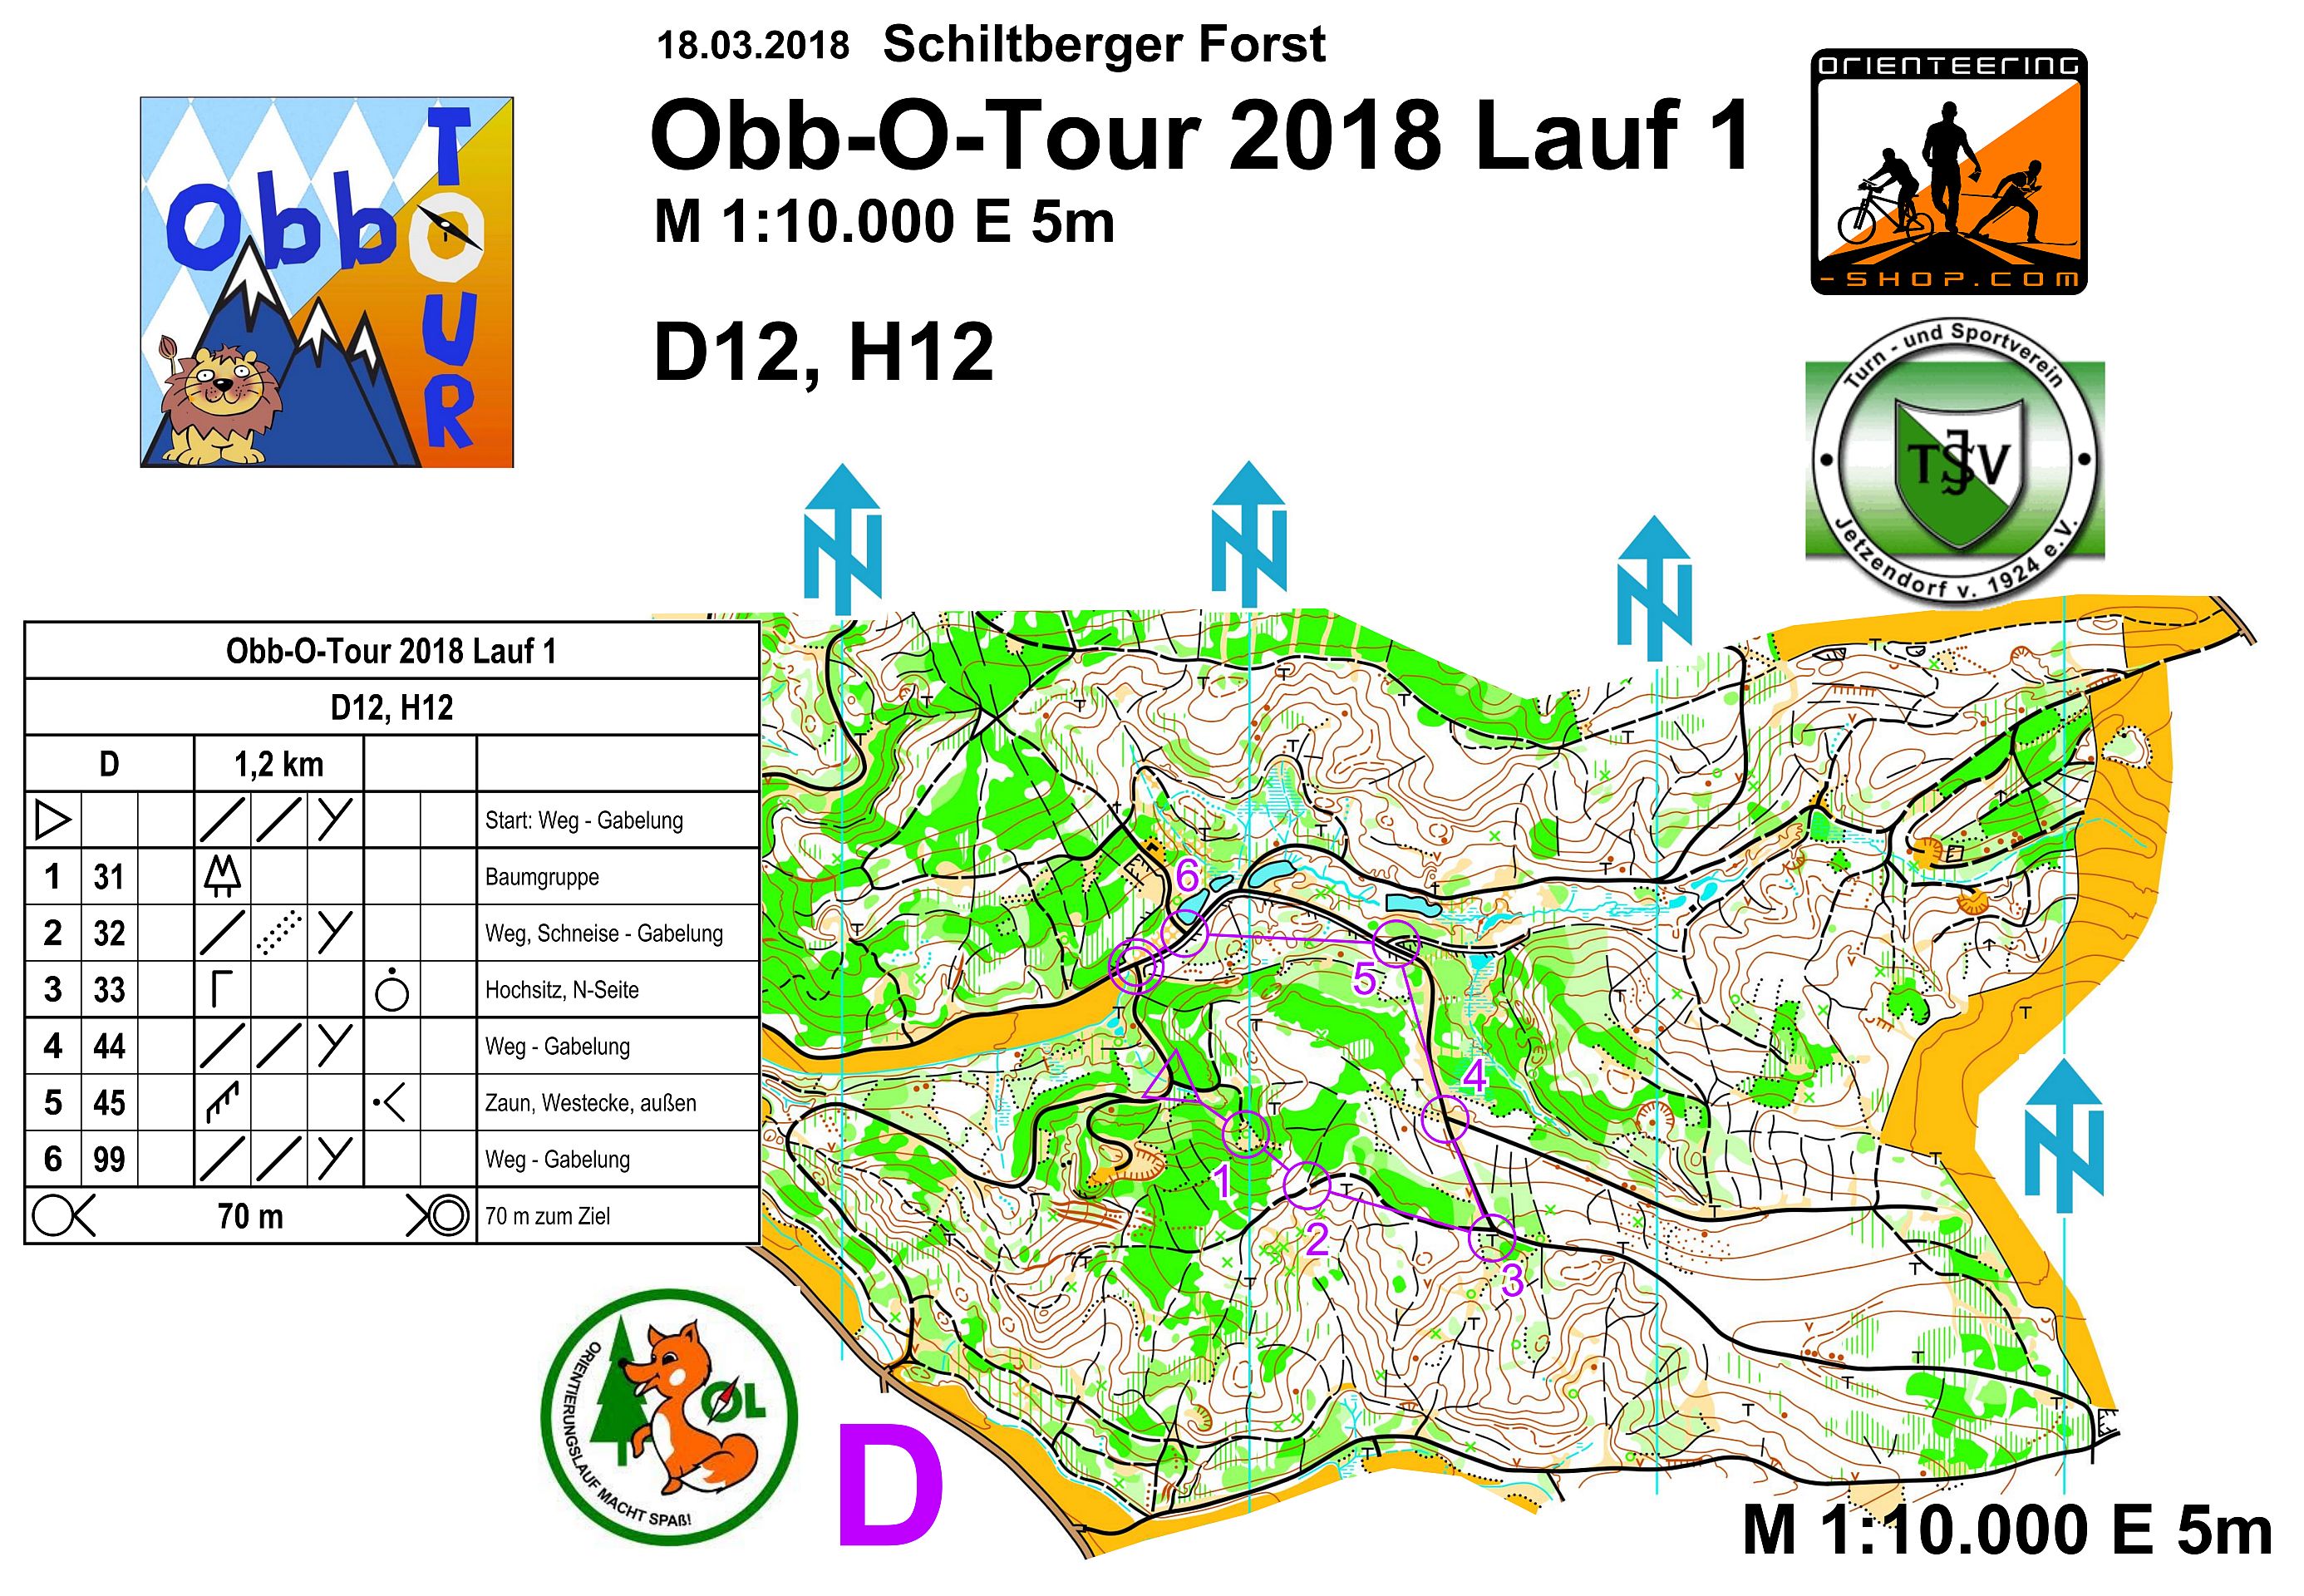 Obb-O-Tour 2018 Lauf 1 (2018-03-18)